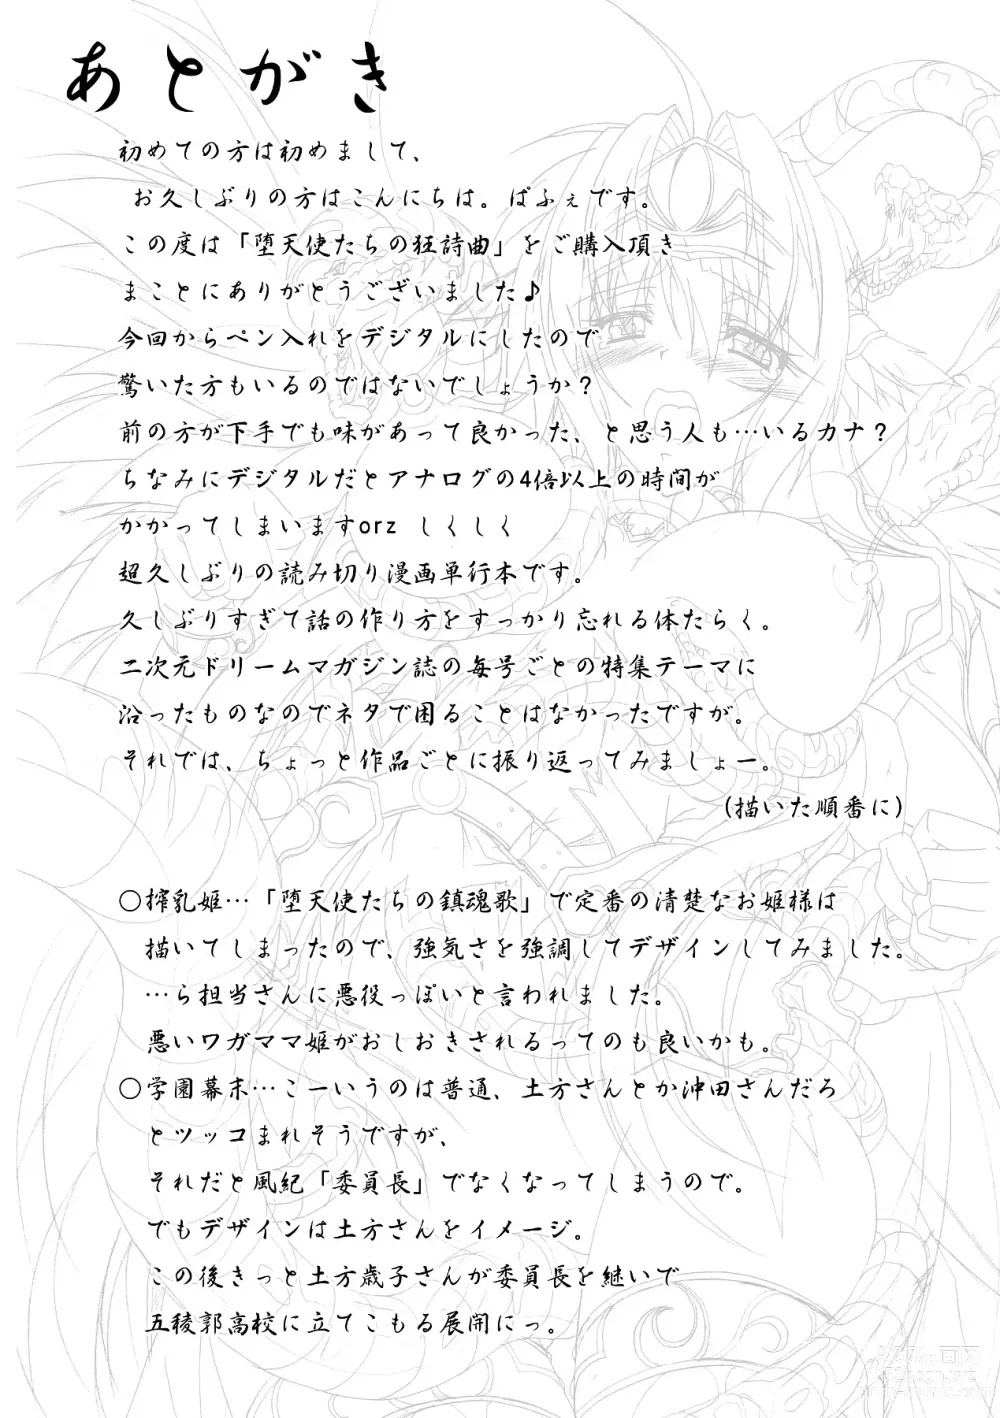 Page 174 of manga Datenshi-tachi no Rhapsody - Fallen Angels Rhapsody